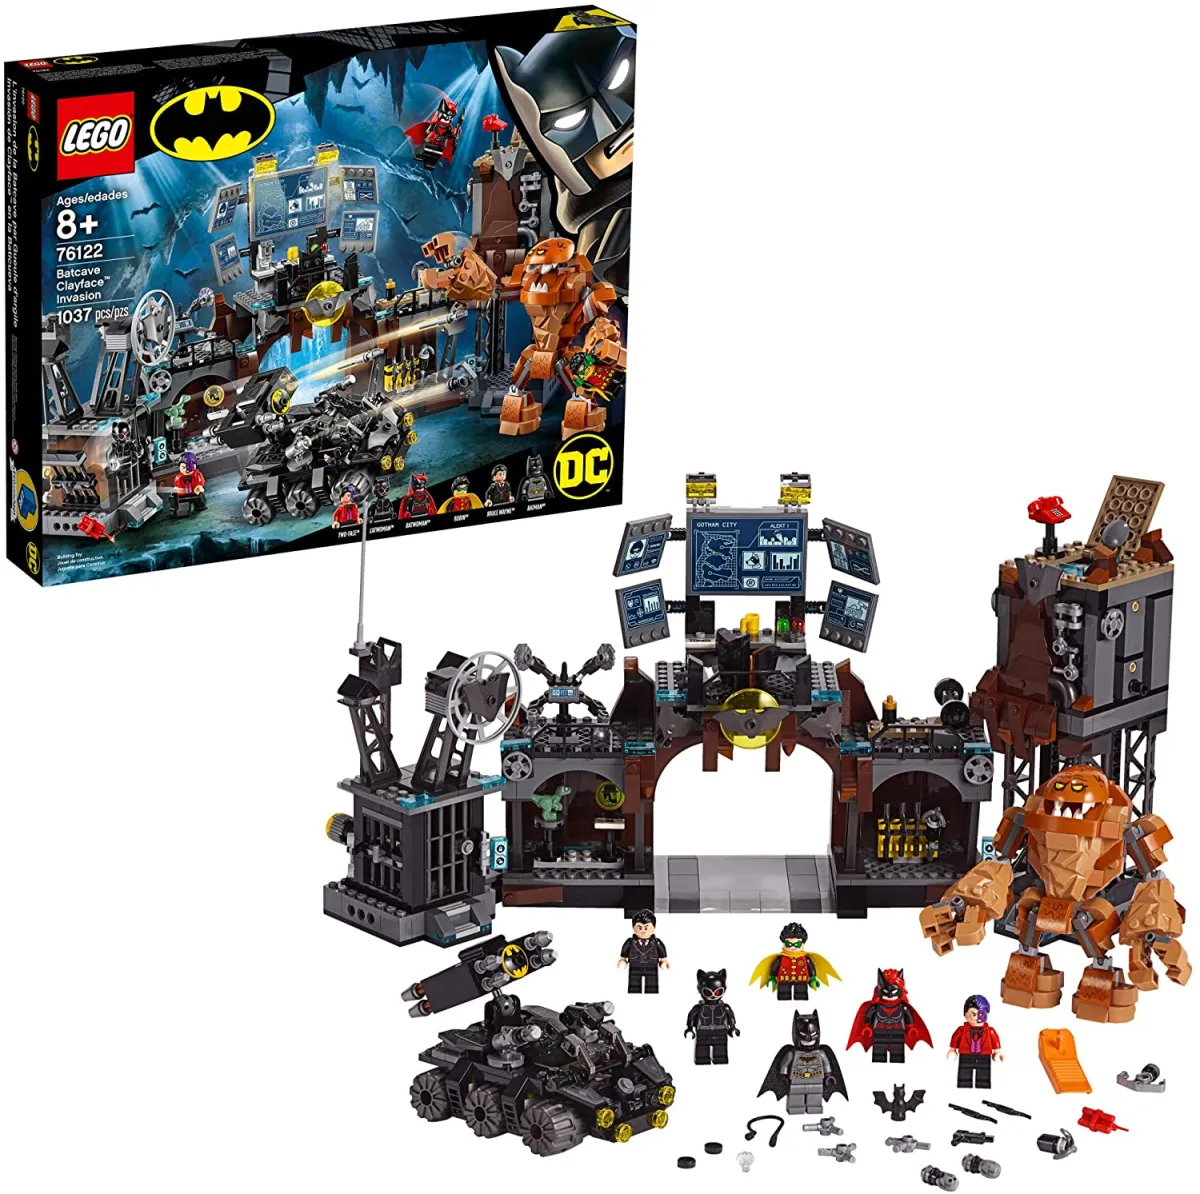 Genuine】LEGO Bộ xây dựng đồ chơi Người dơi DC Batman Cave Clayface Invasion  76122 với